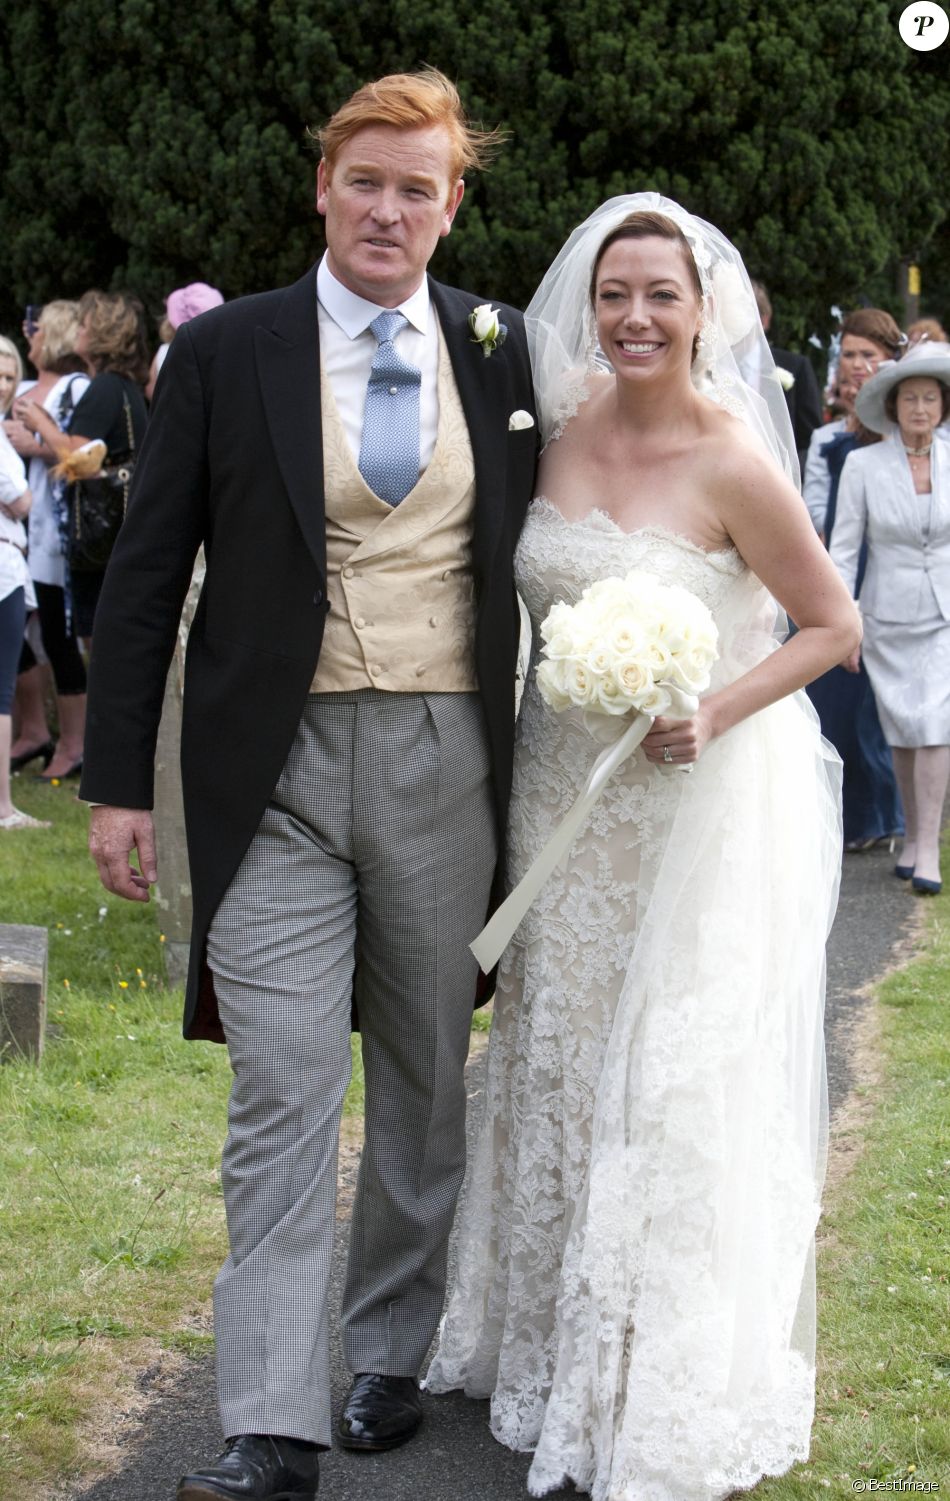  Mark Dyer et Amanda Kline lors de leur mariage, le 3 juillet 2010 au Pays de Galles, en présence du prince Harry. 